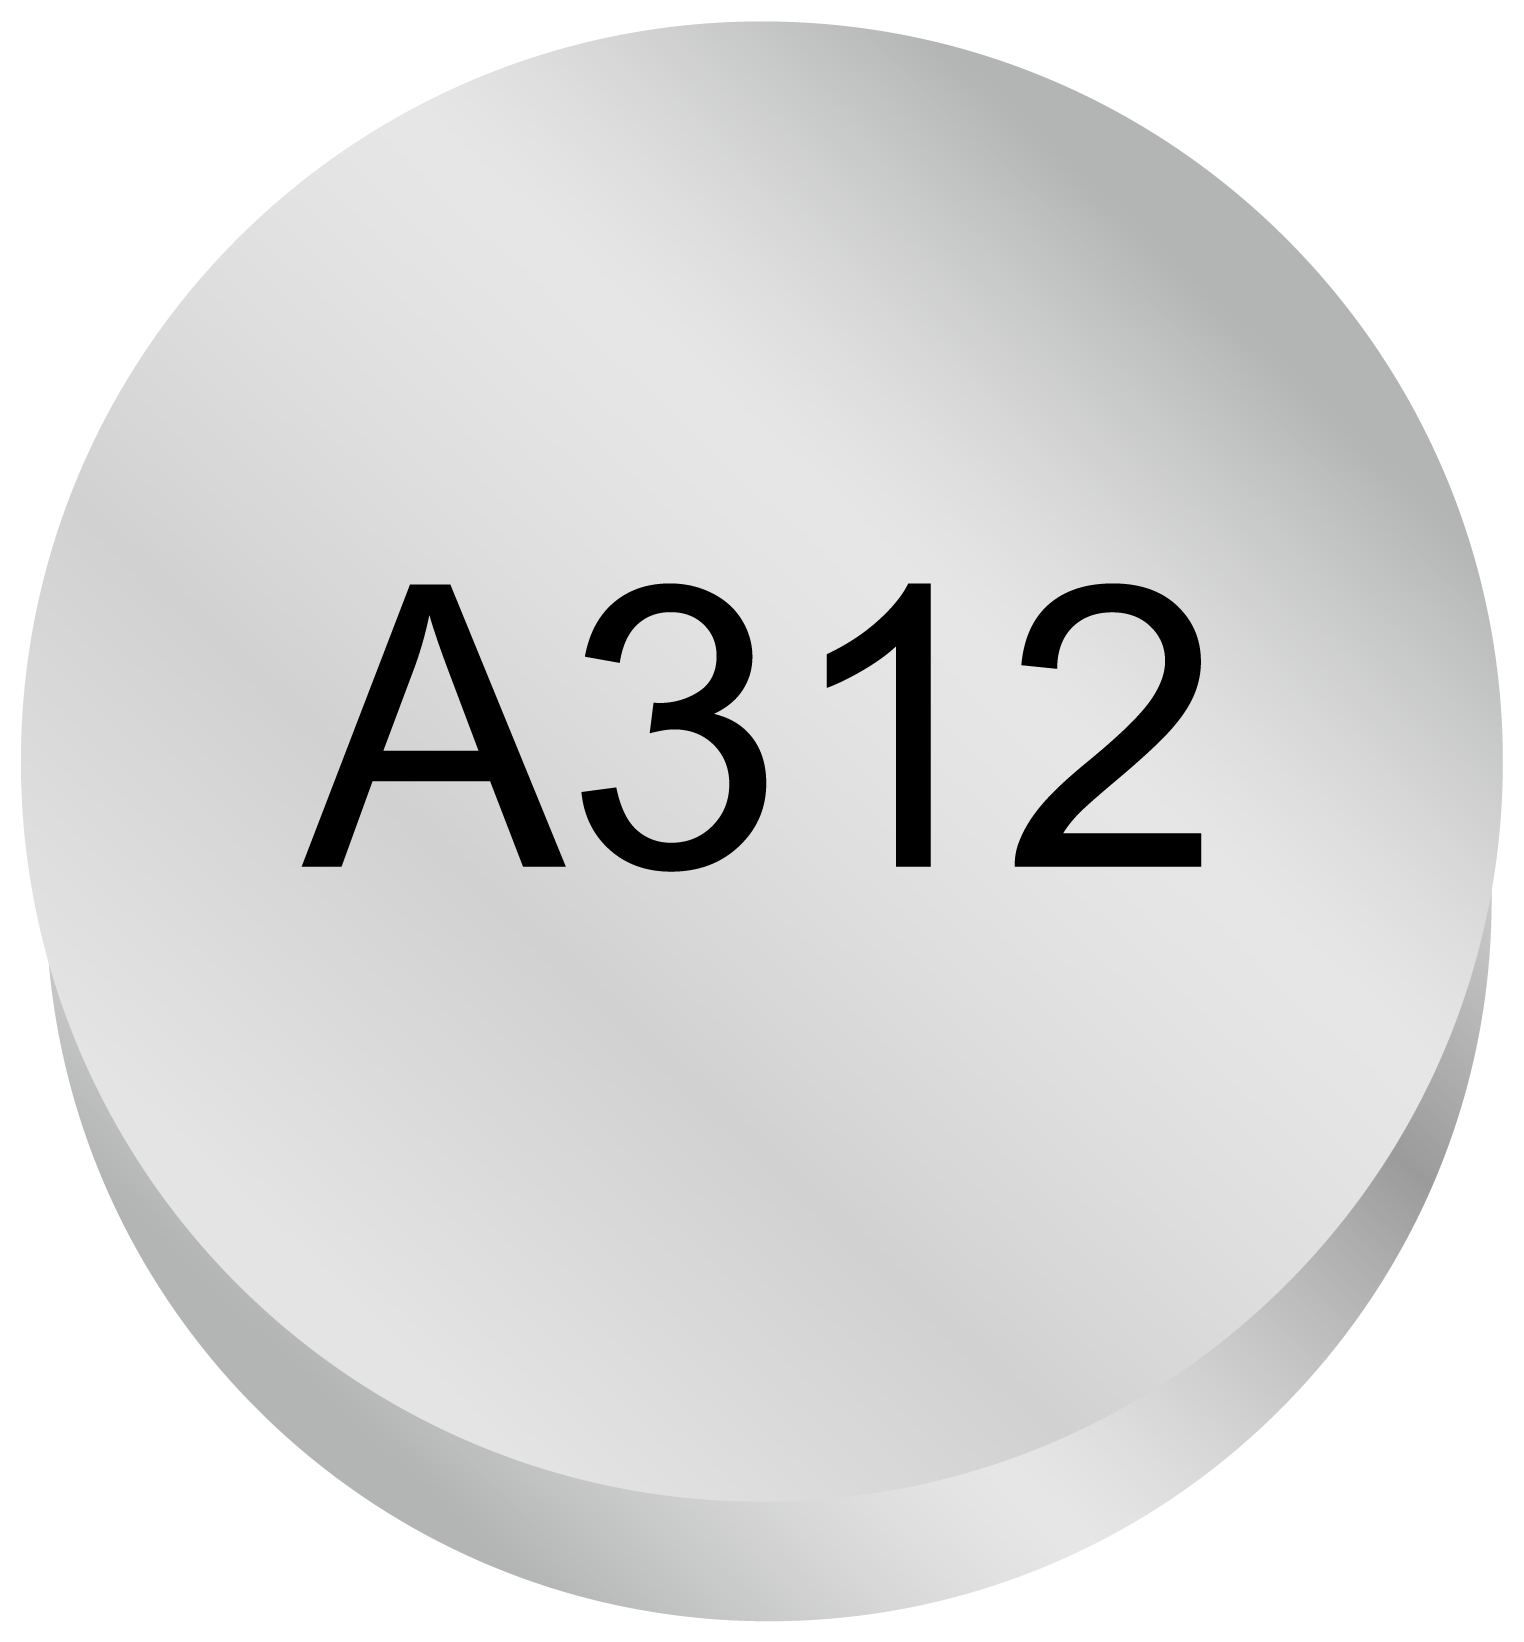 A312 zinc-air battery